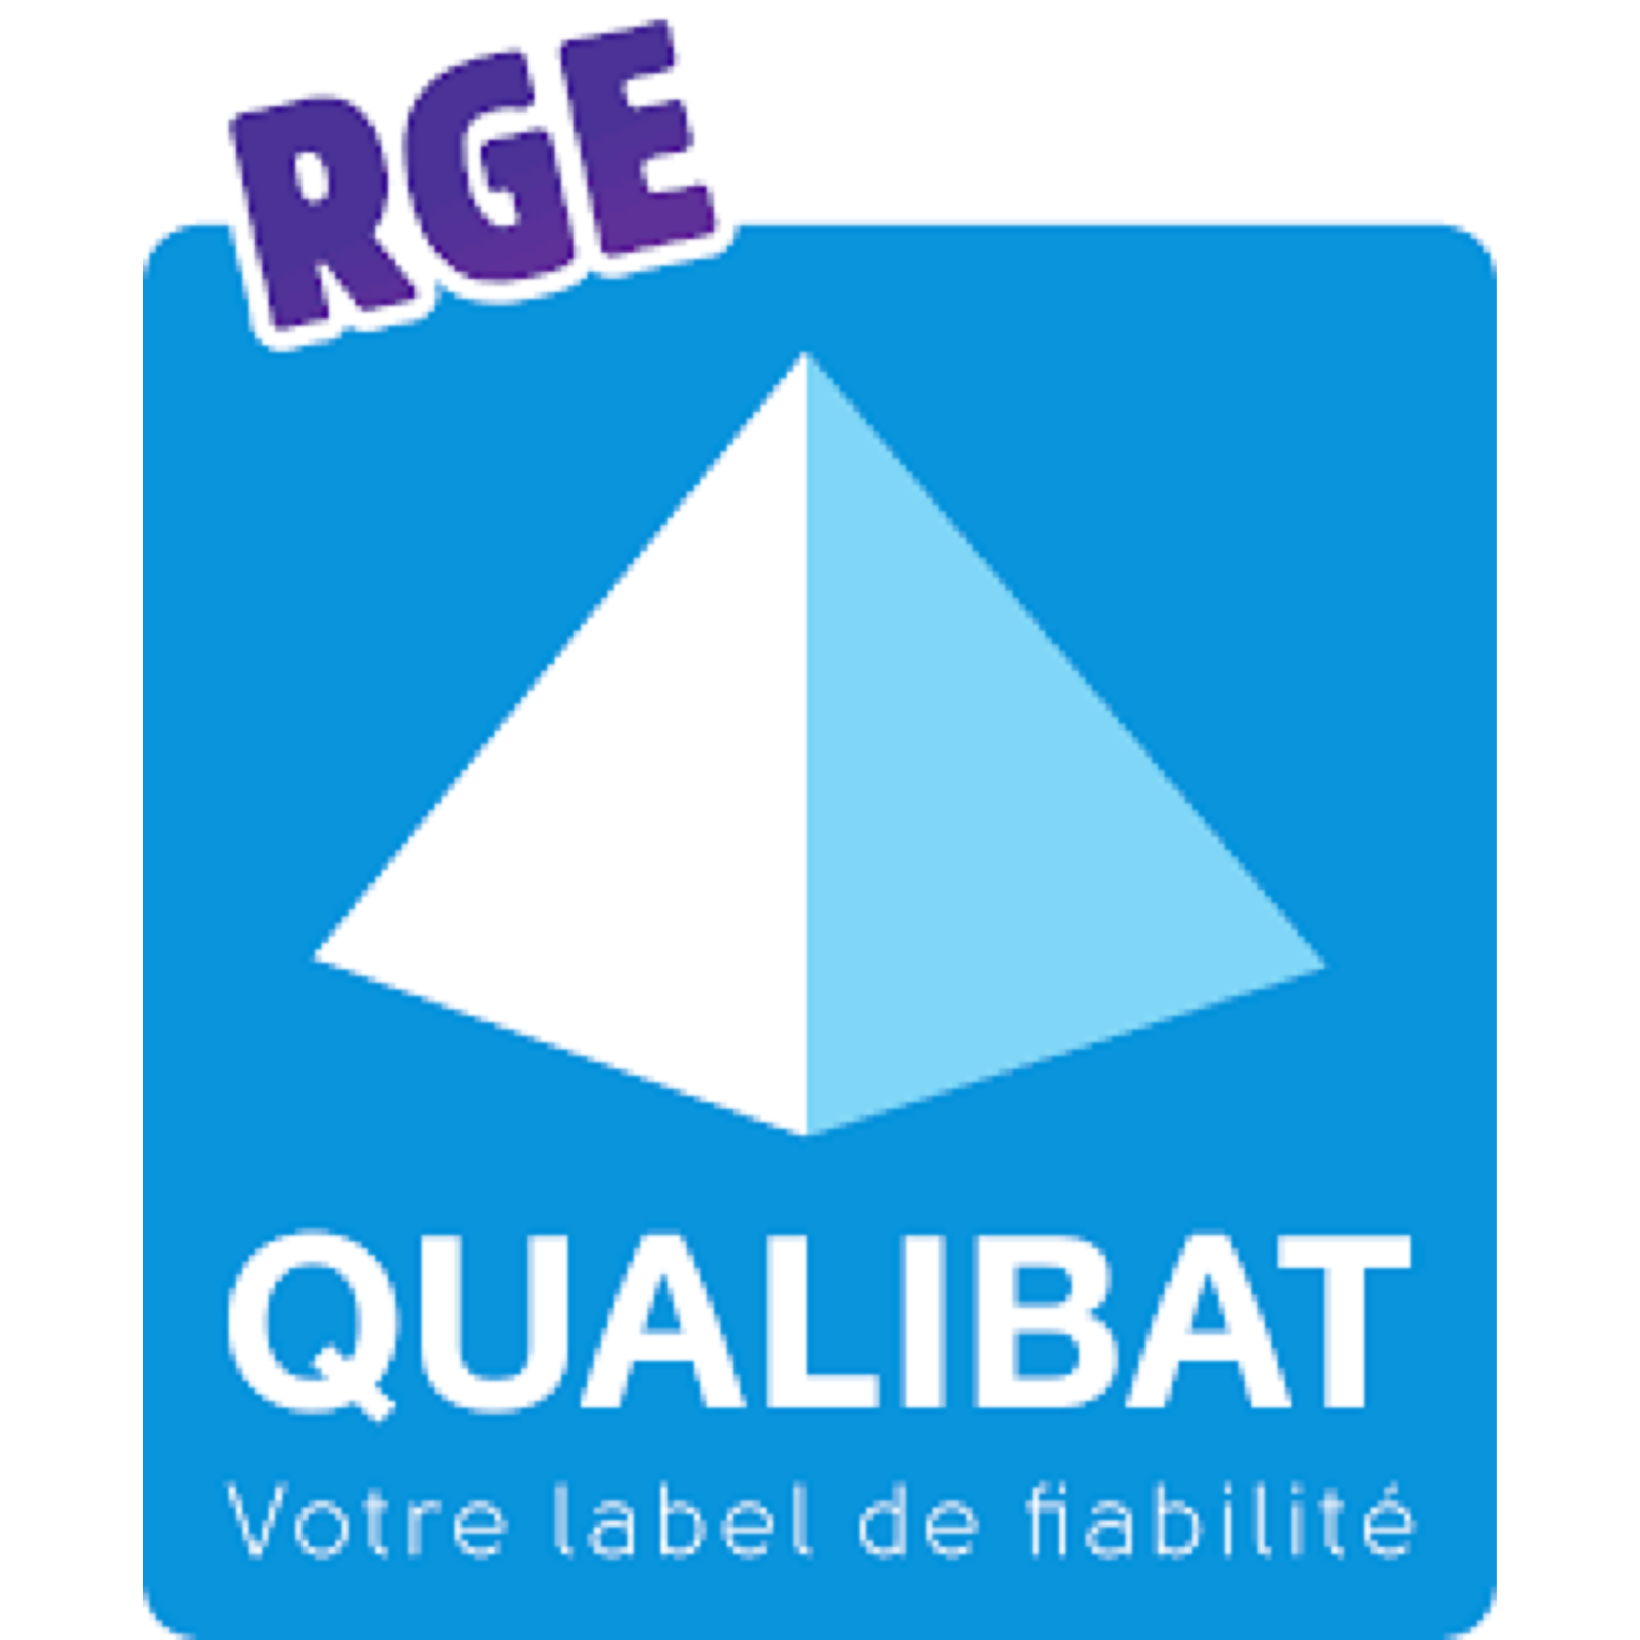 Un logo bleu contenant les inscriptions "RGE QULIBAT" gage de qualité